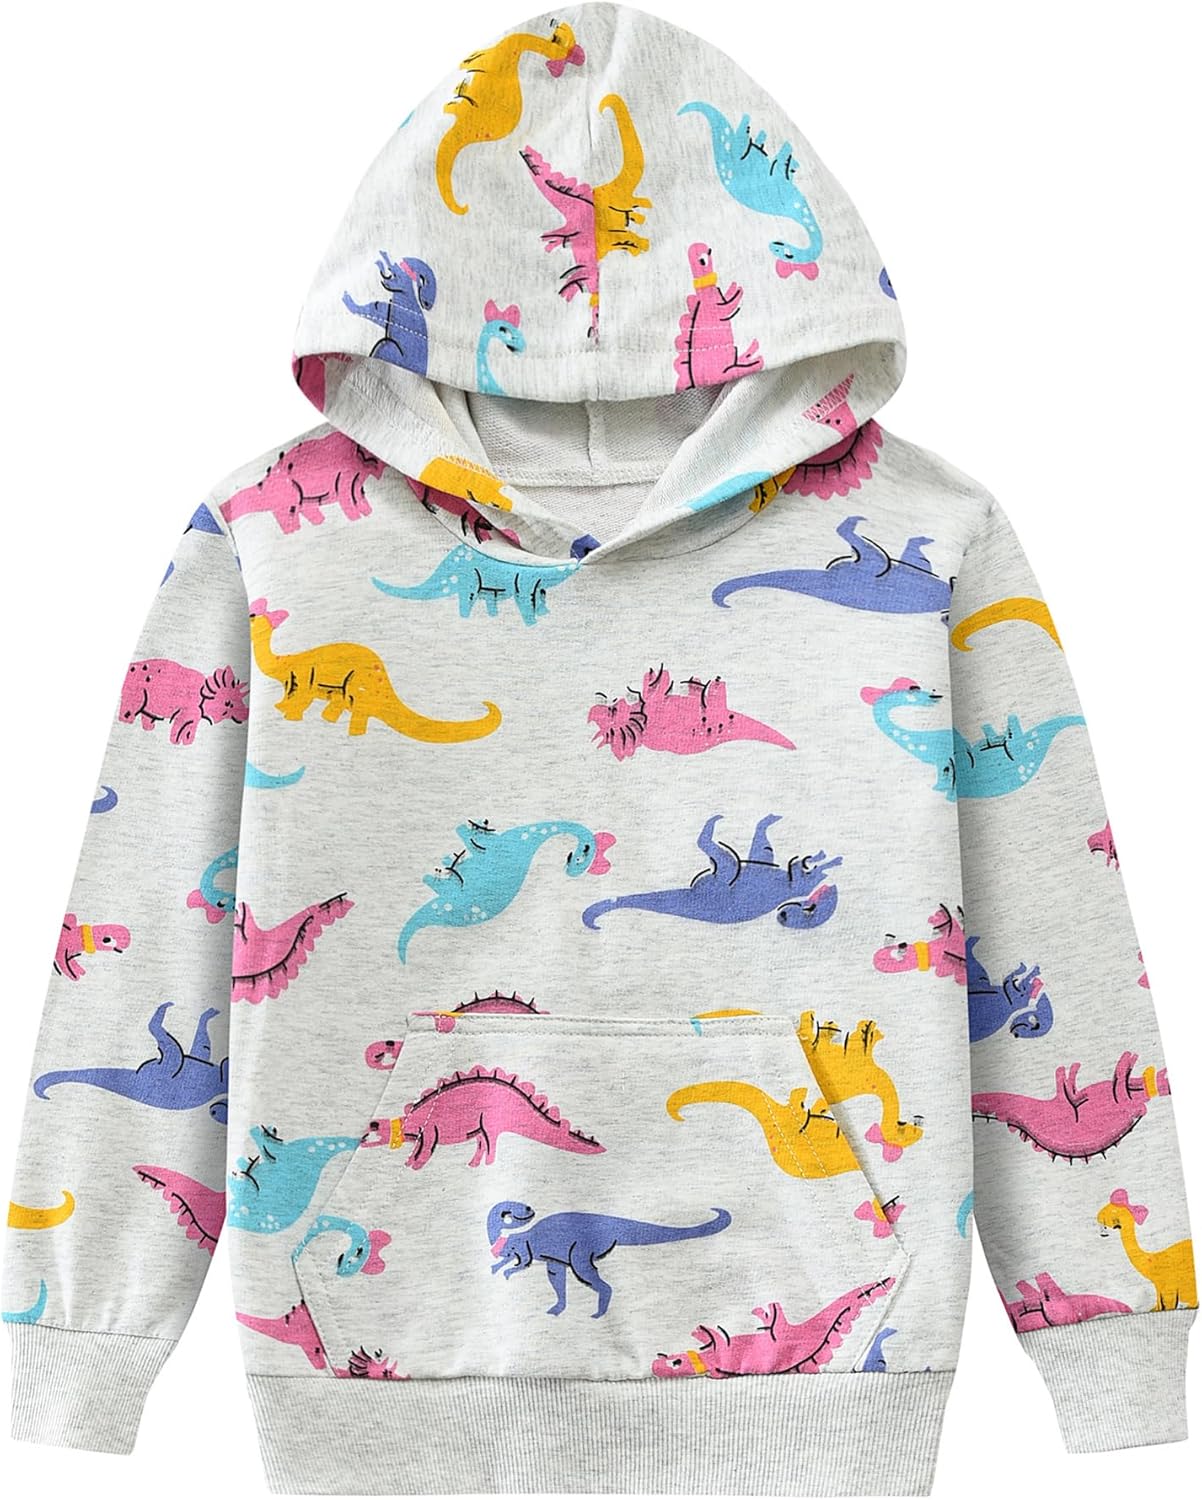 Girls Hoodies Kids Dinosaur Sweatshirt Lightweight Long Sleeve Pullover Top Toddler Hooded Shirt Winter Outwear 1-7T